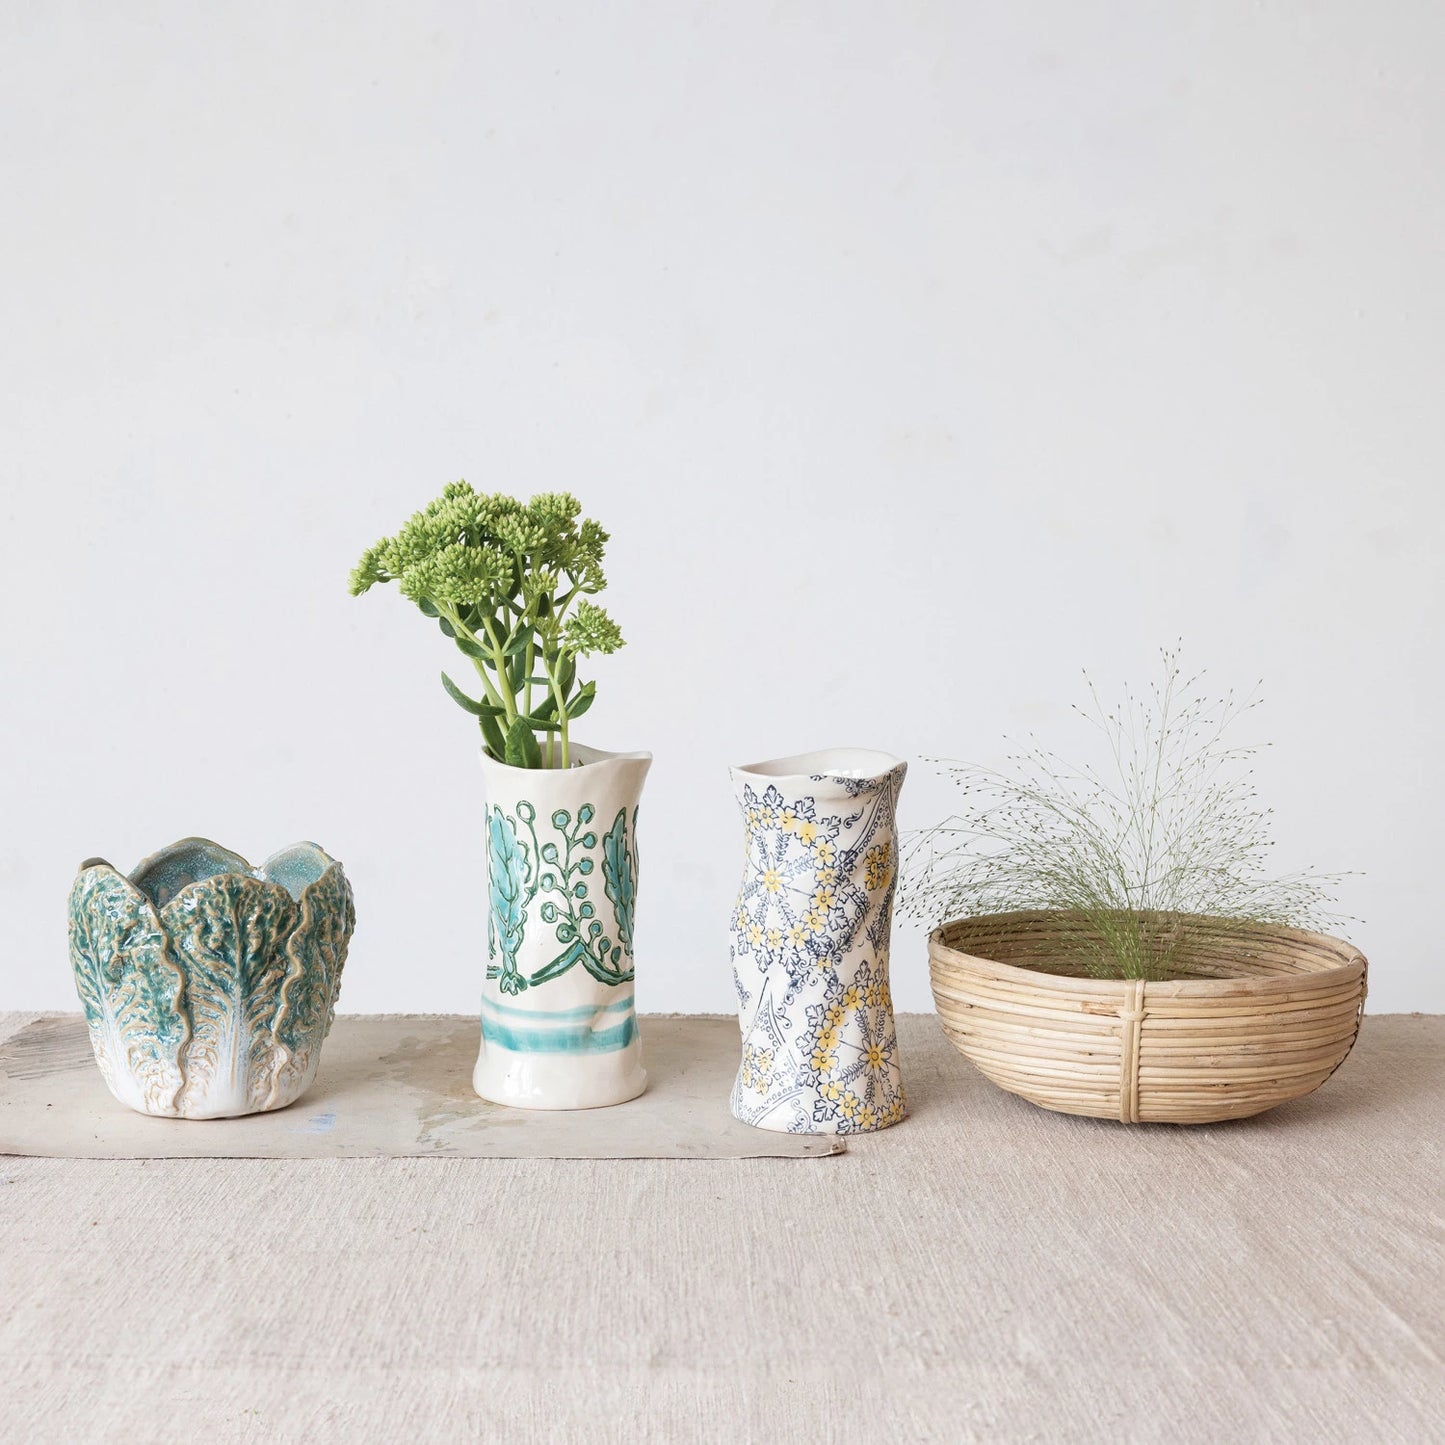 Stoneware Organic Shaped Vase